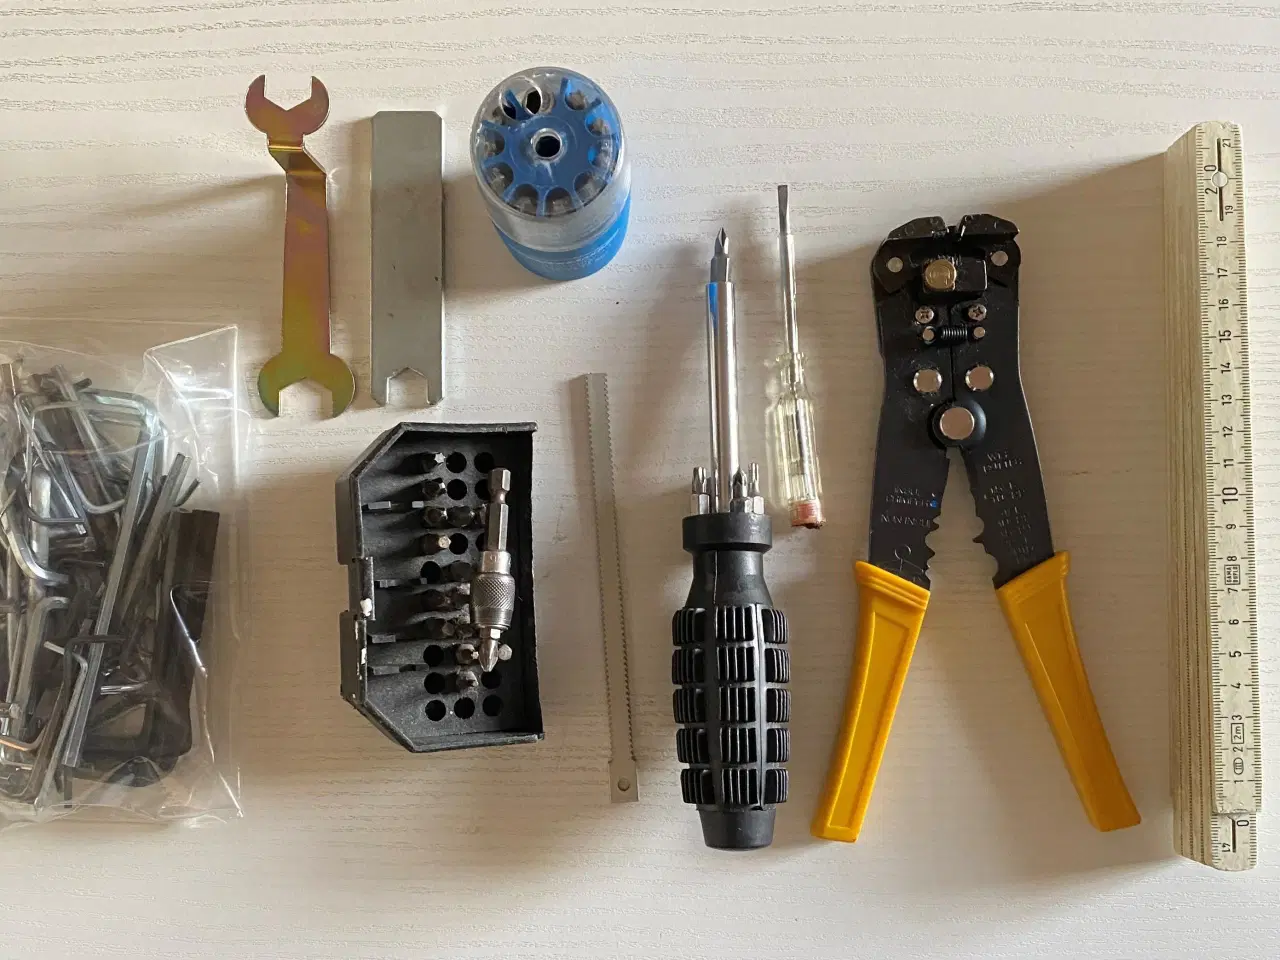 Billede 2 - Bits skruetrækker og umbraco-nøgler